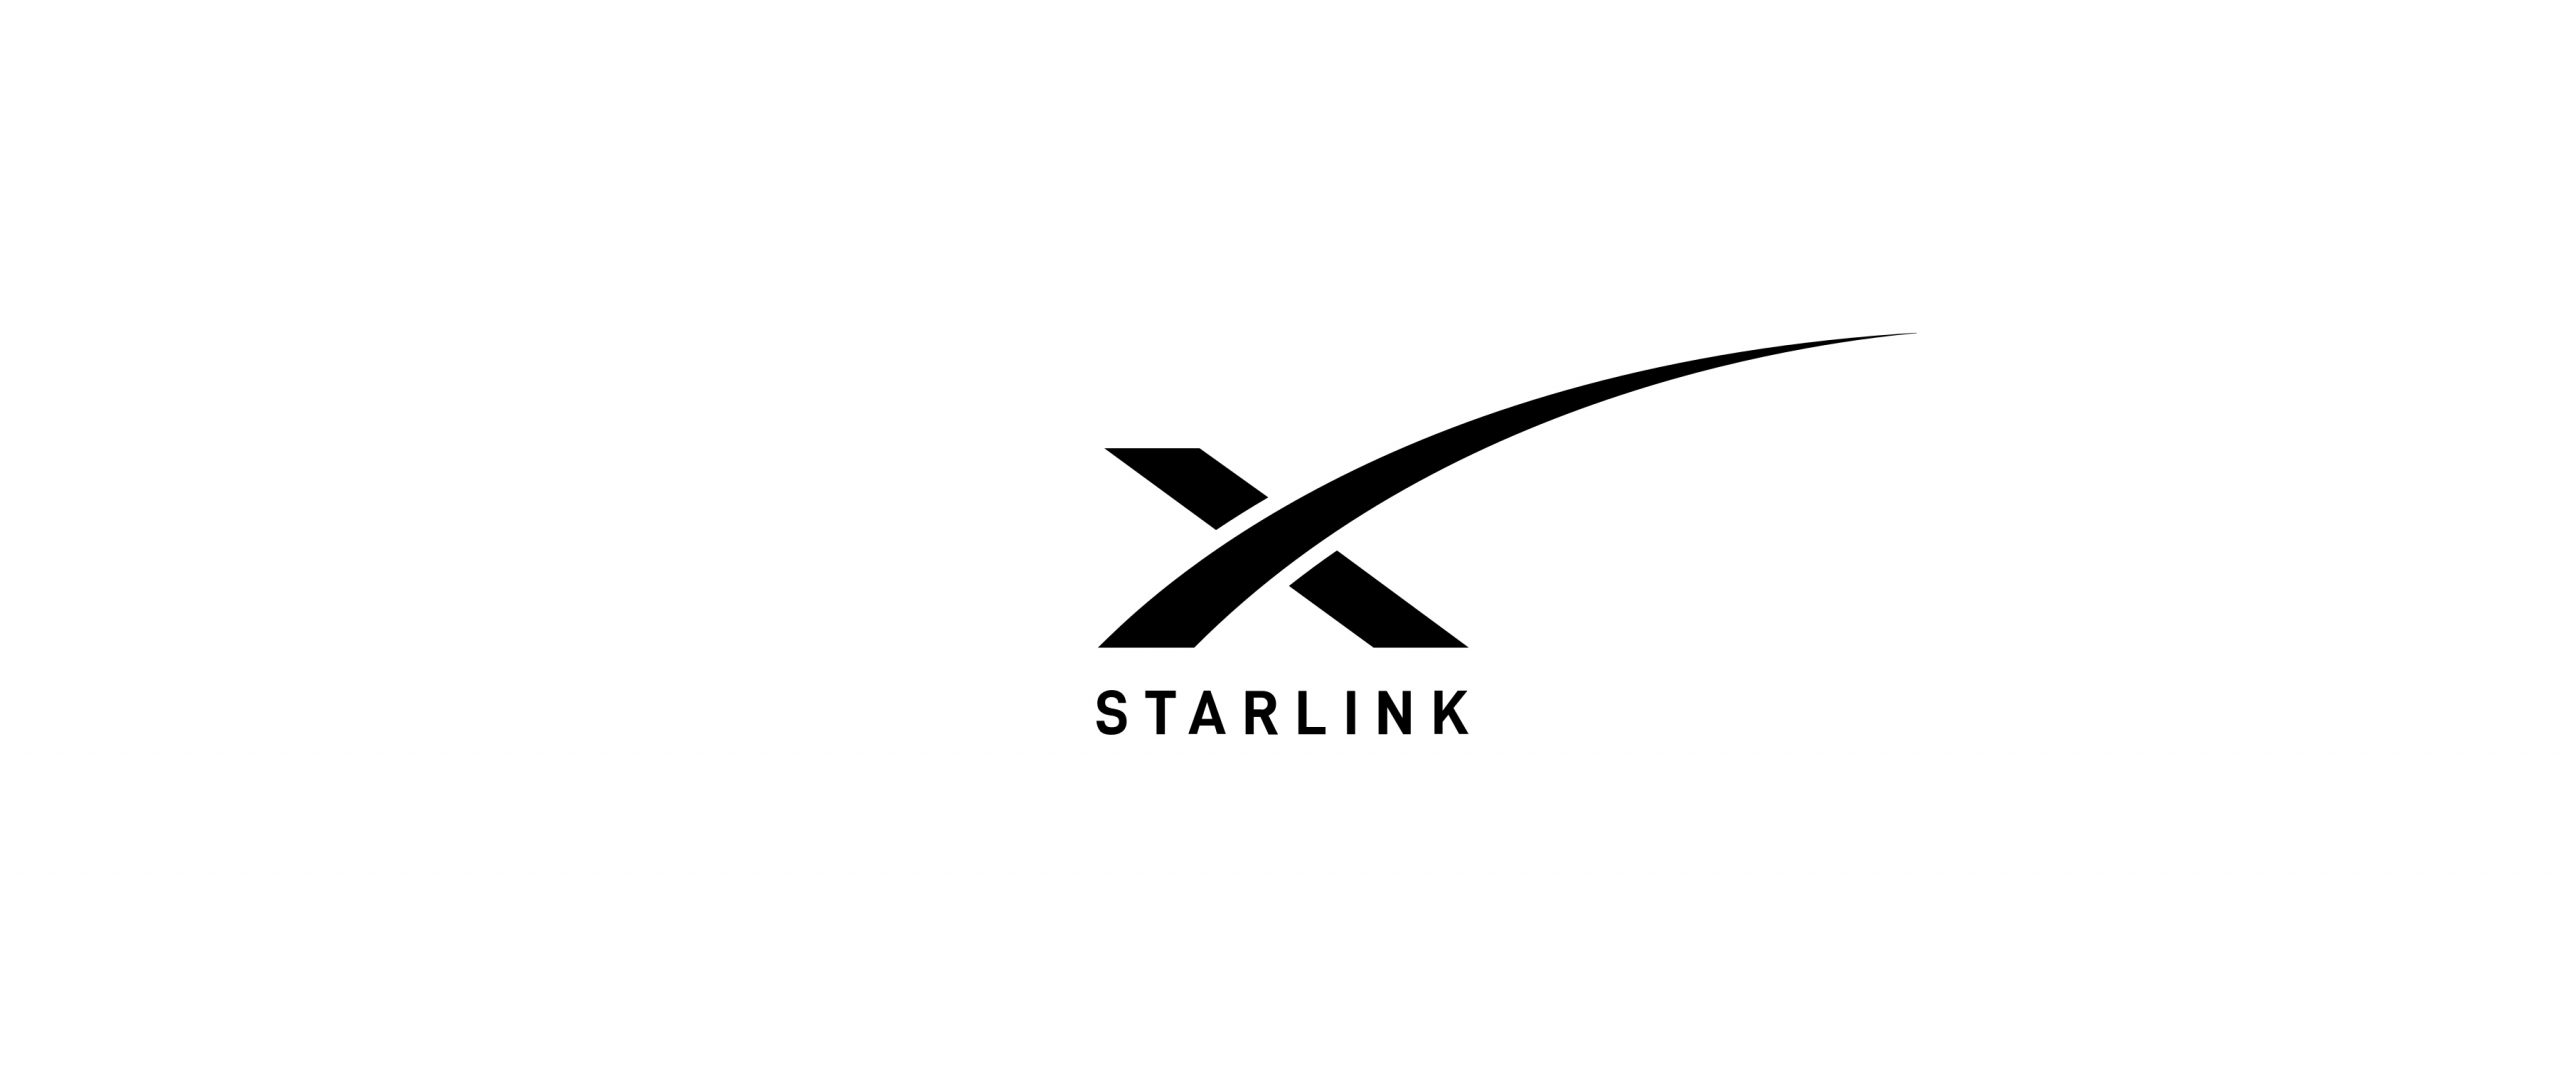 Starlink izni aldı! Kapsama alanı genişliyor